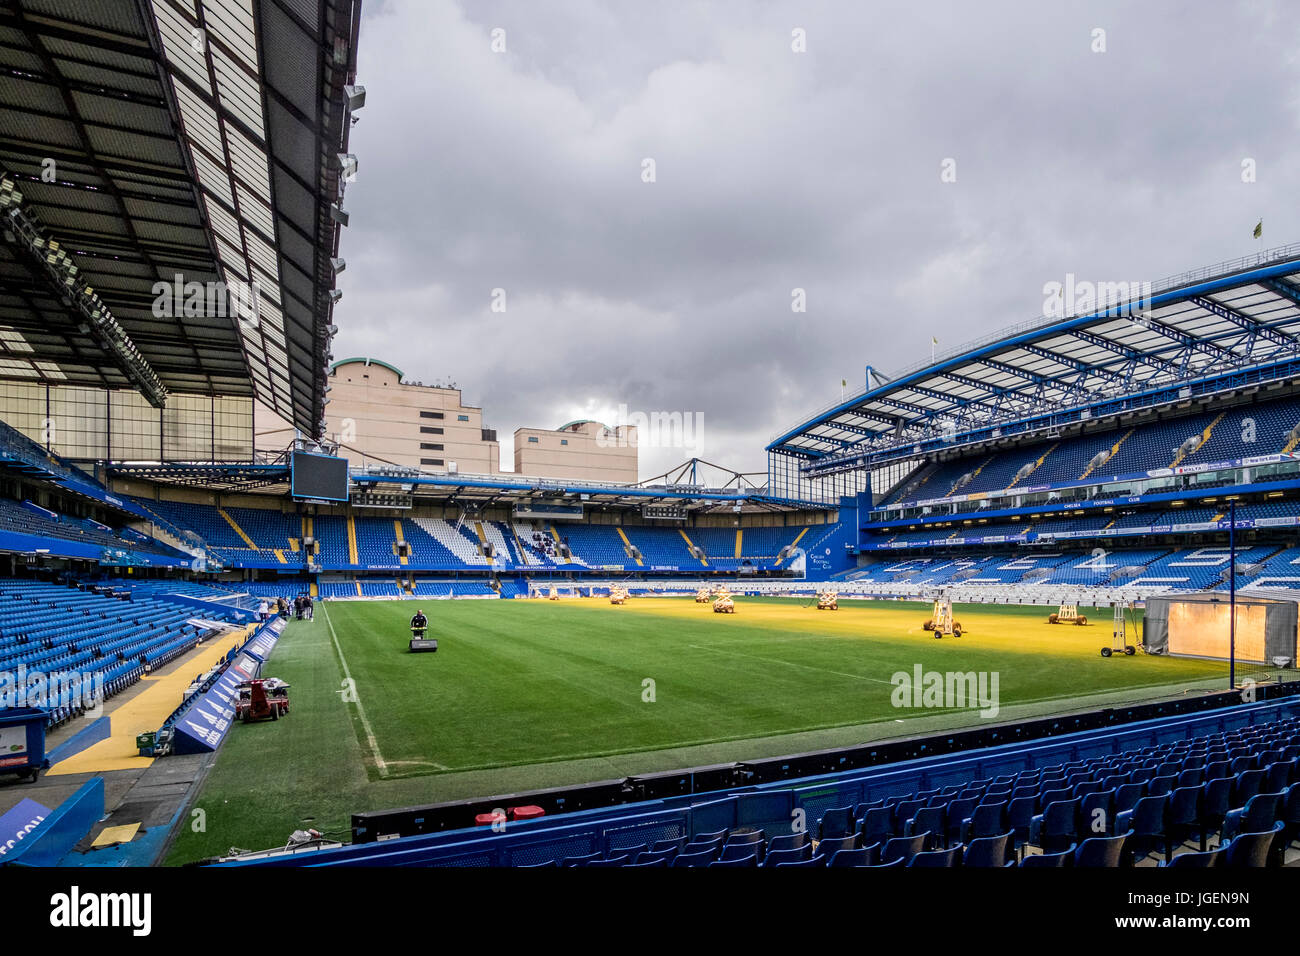 Le Stamford Bridge est un stade de football, qui est situé dans la région de Fulham à Londres, Royaume-Uni. Le stade est terrain du Chelsea F.C. et a une capacité de 60 000. Banque D'Images